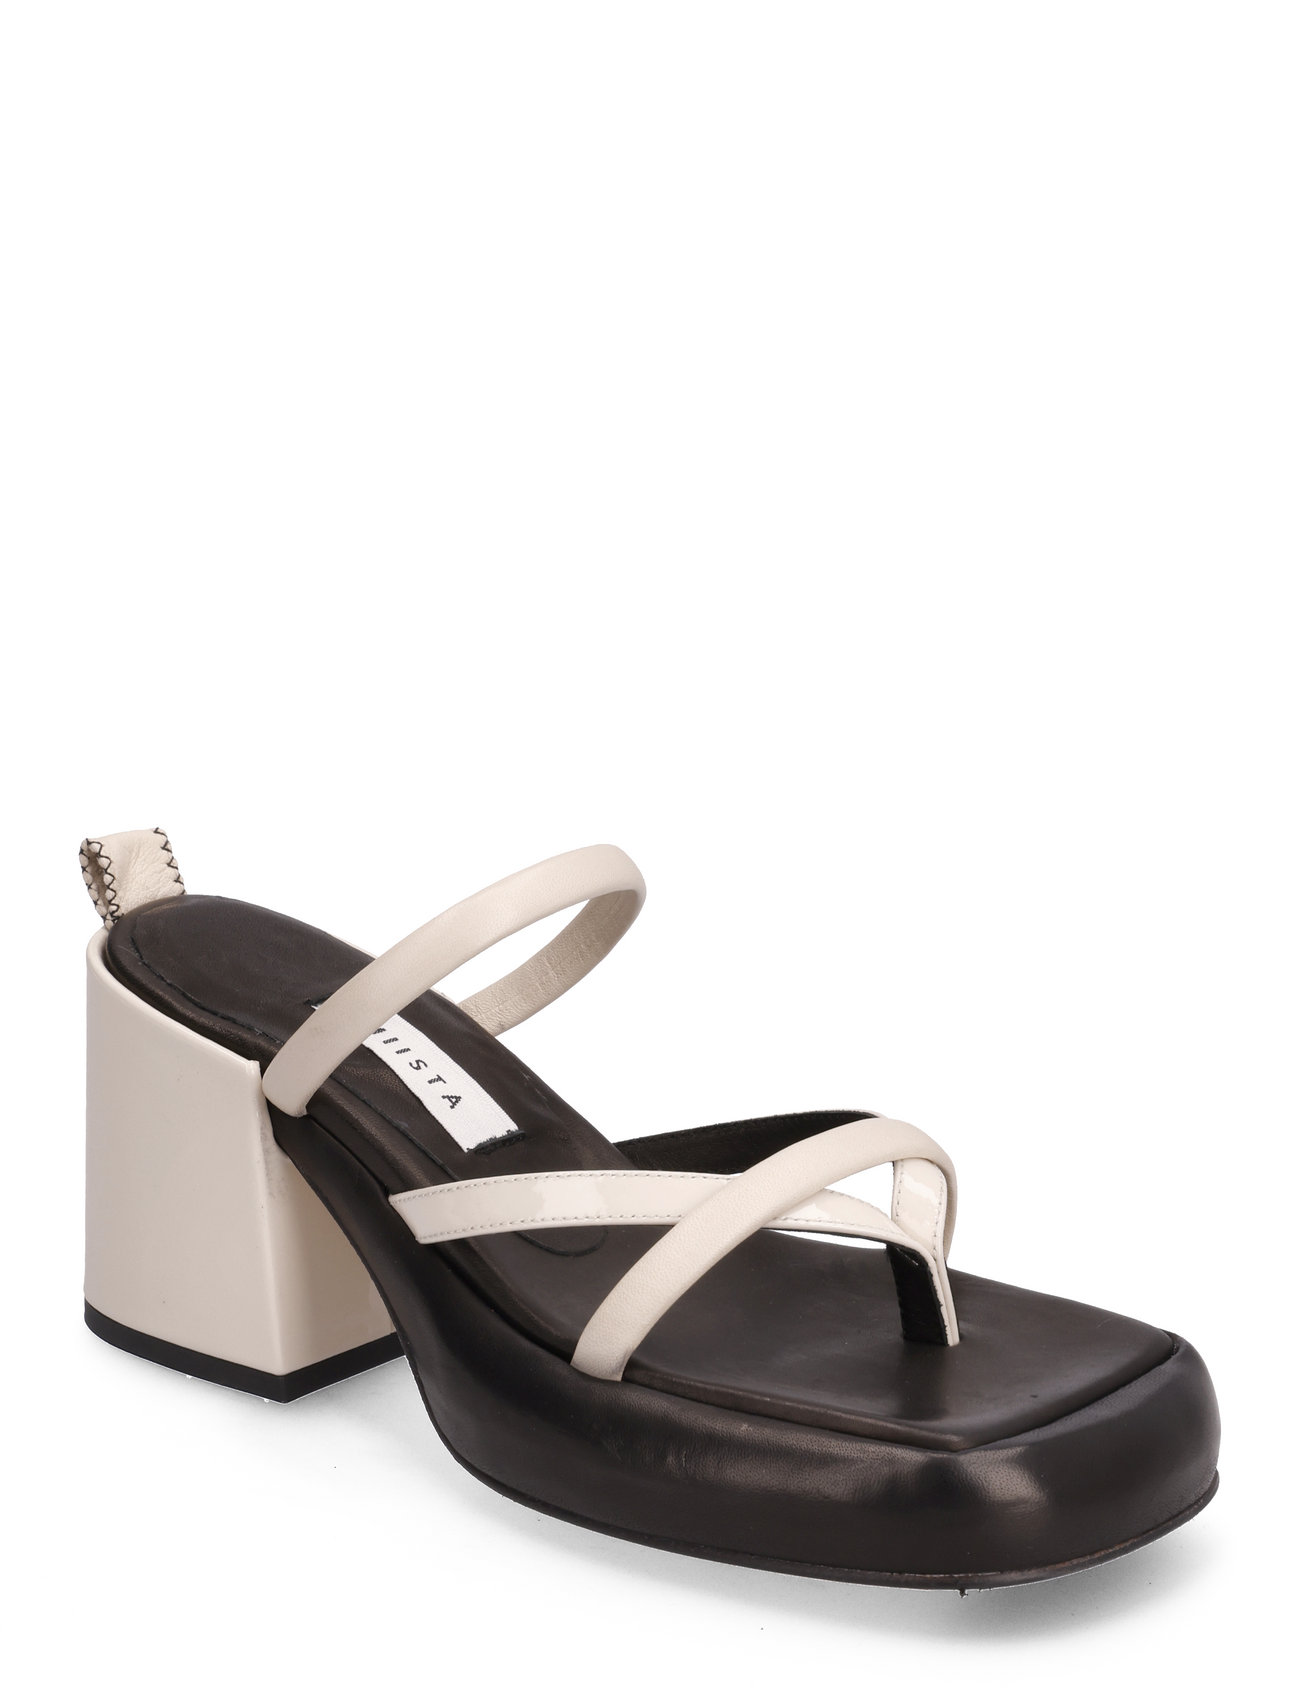 MIISTA Delphine White Sandals - Sandals - Boozt.com